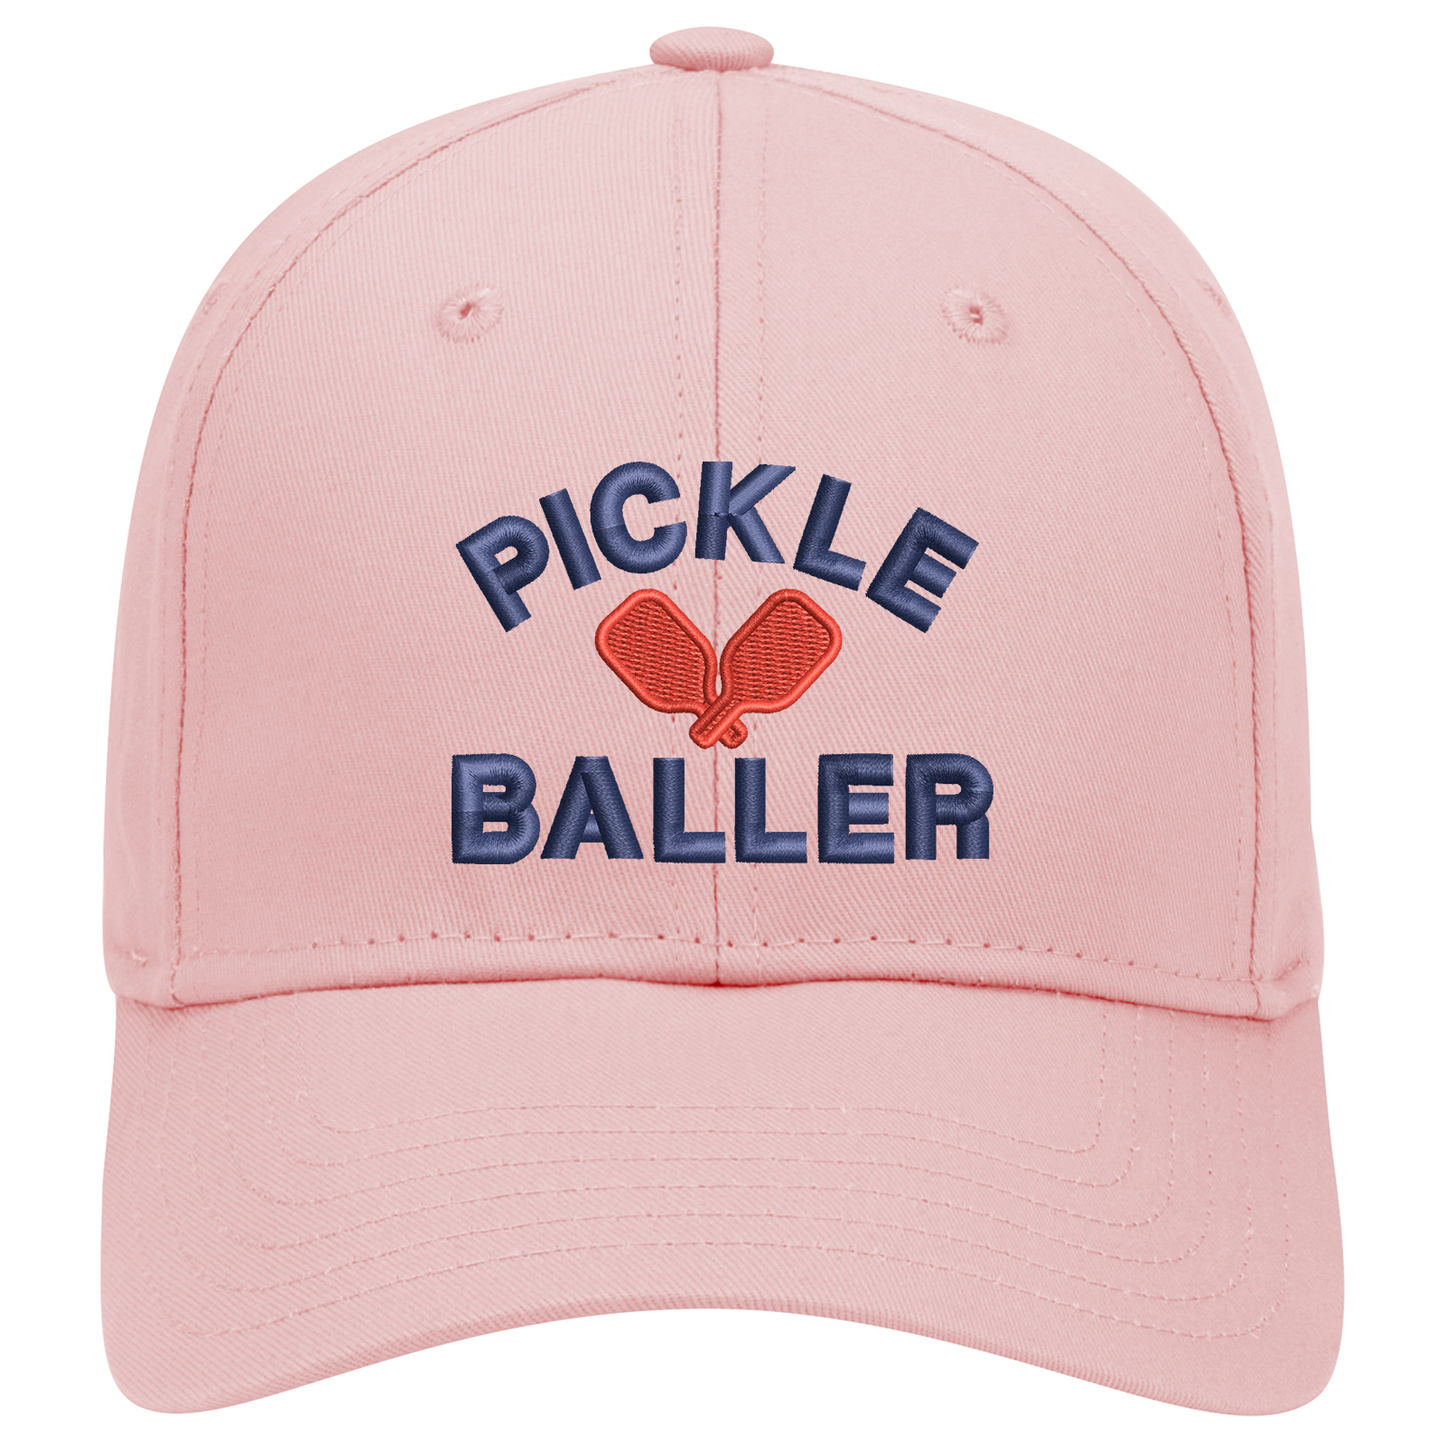 Pickle Baseball, Best Pickleball Hats, Baseball Cap, Pickles Cap